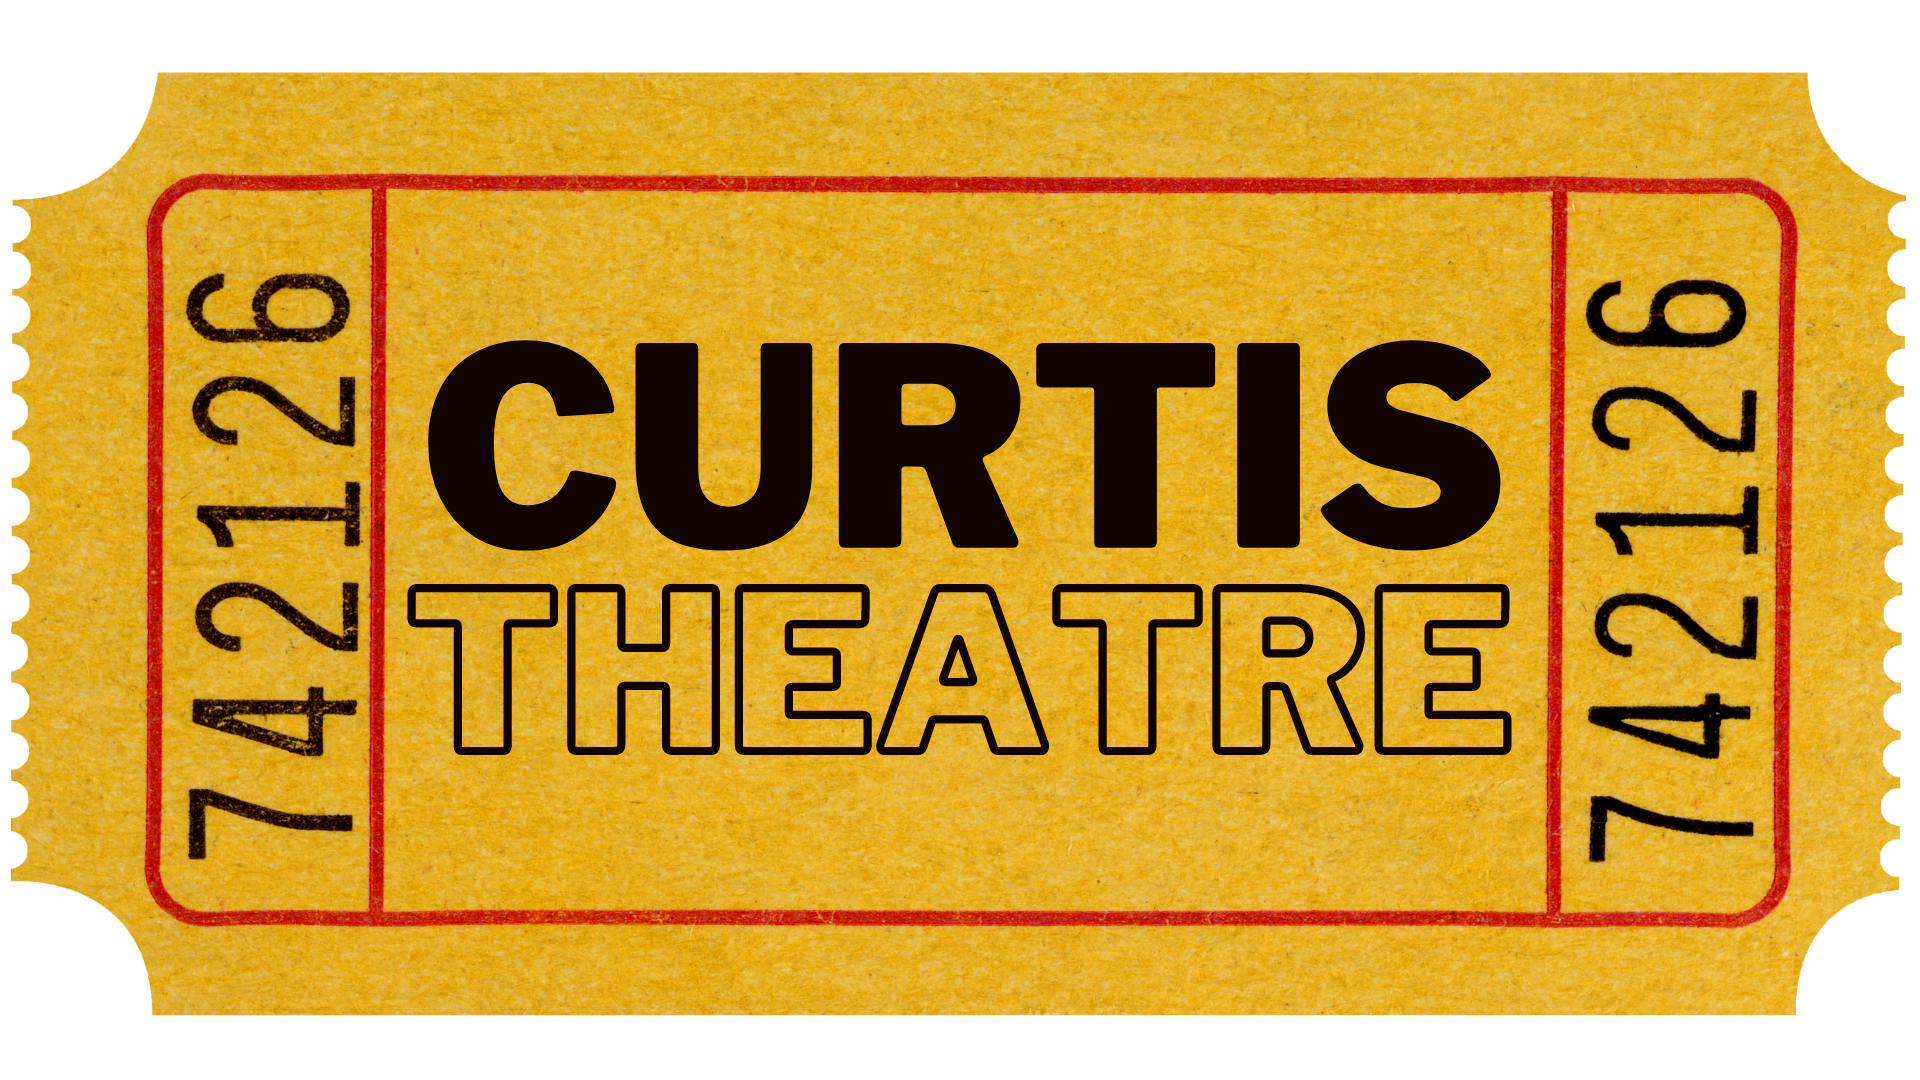 Curtis Theatre